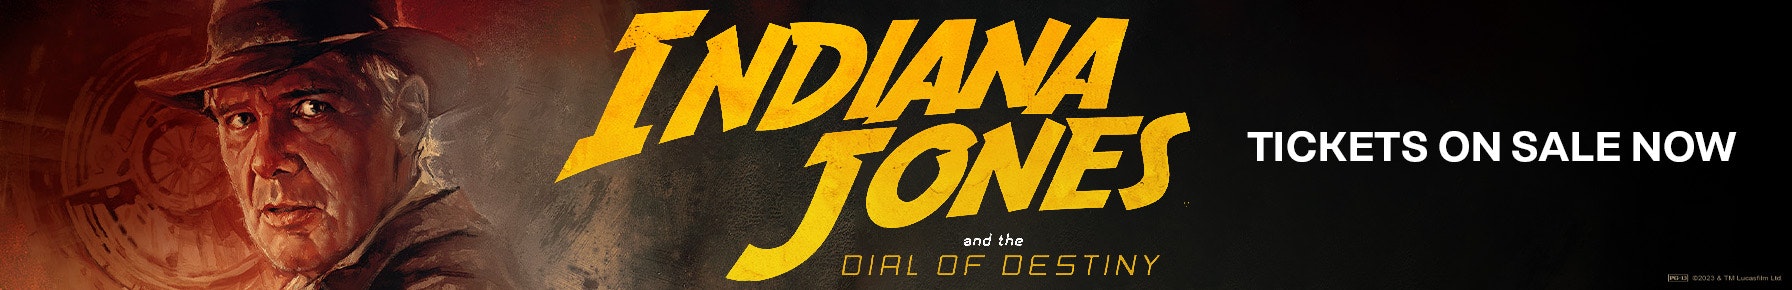 indiana-jones-movie-detail-harkins-image